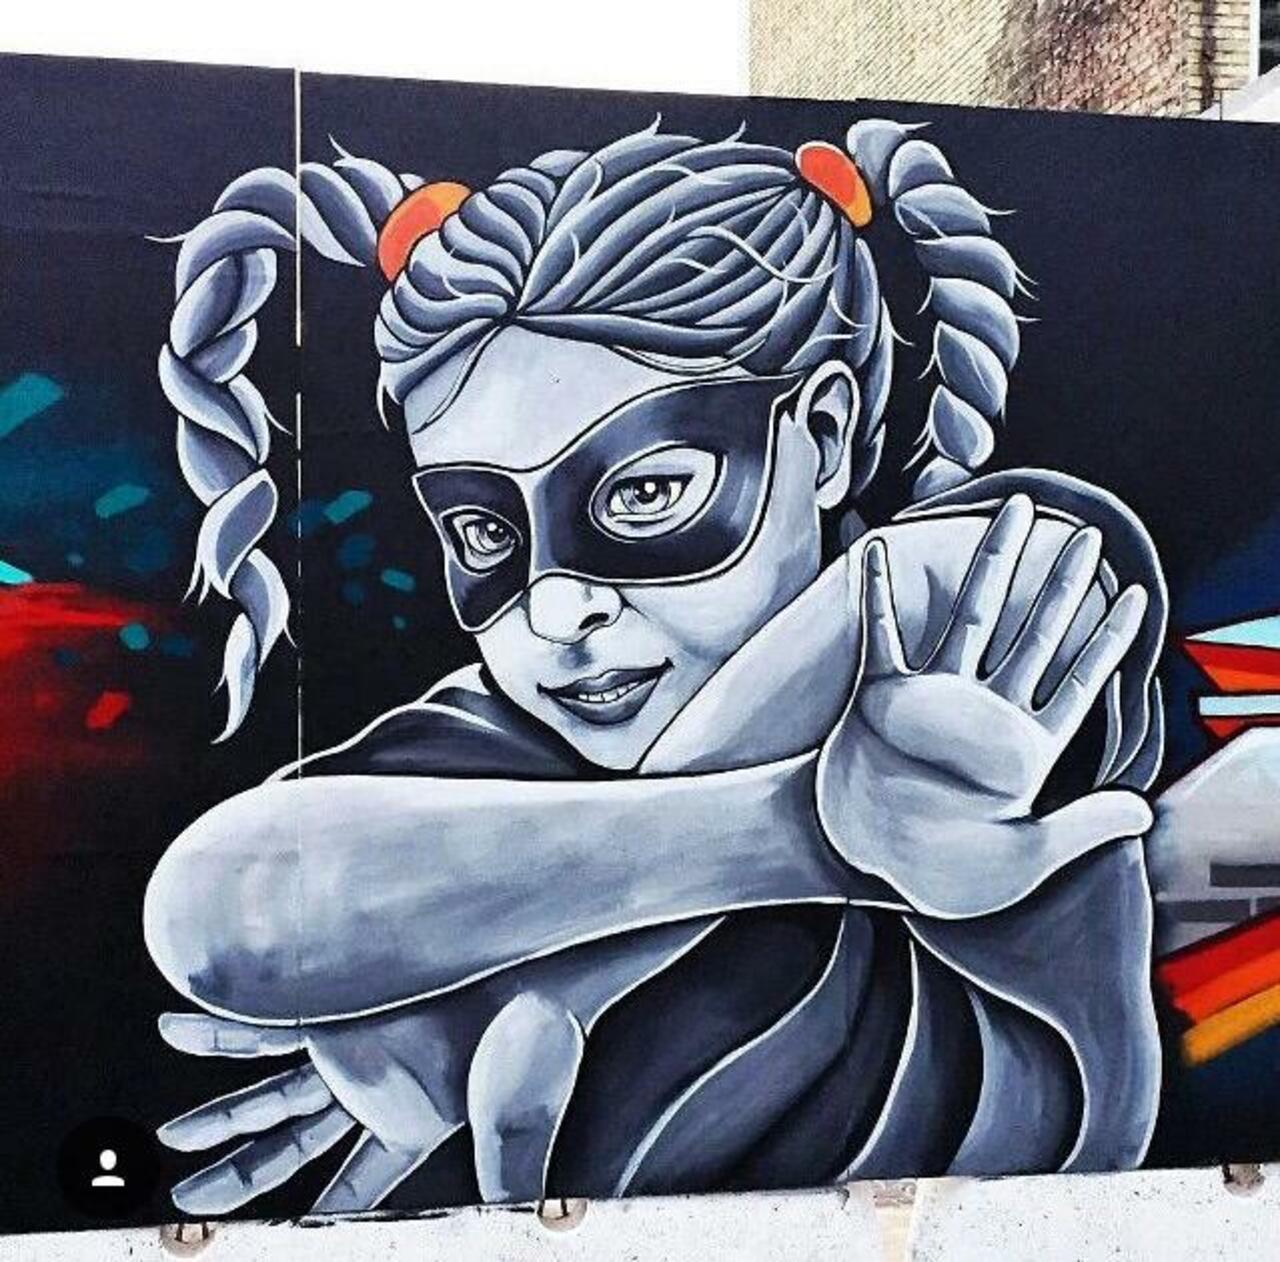 Street Art by Stinehvid 

#art #graffiti #mural #streetart http://t.co/pDu3lnTU2X